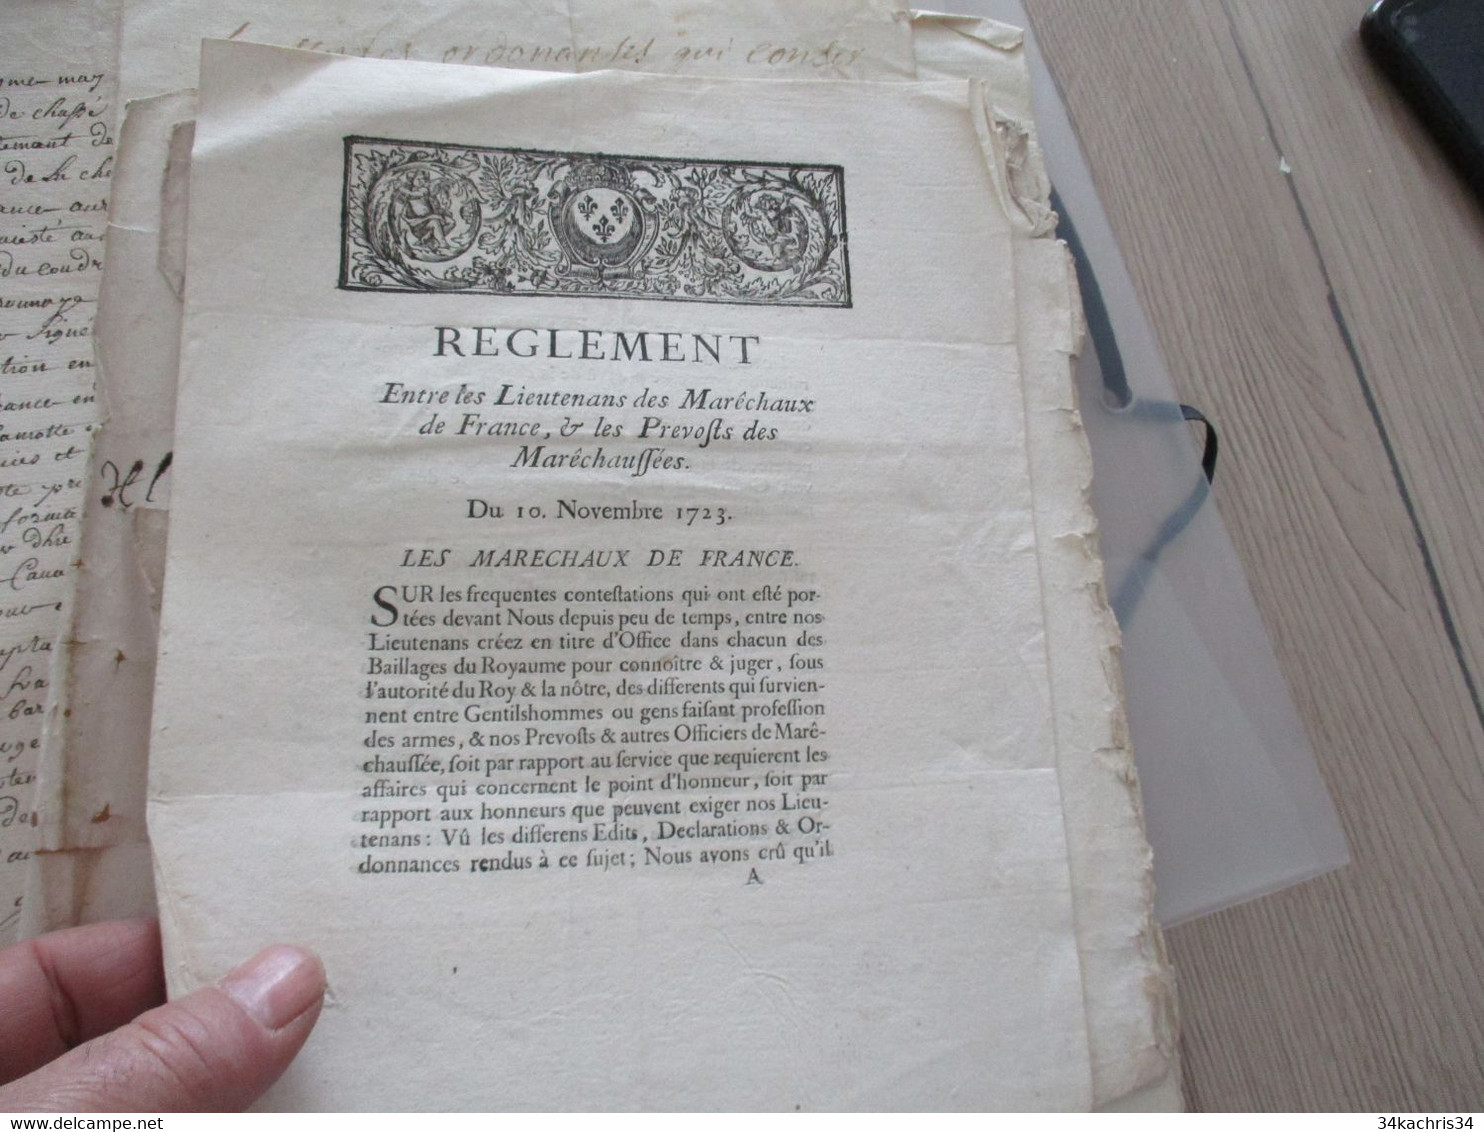 Archive Delamotte Barace sier de Coudray Montpensier 15 pièces dont règlements sceau correspondance signatures